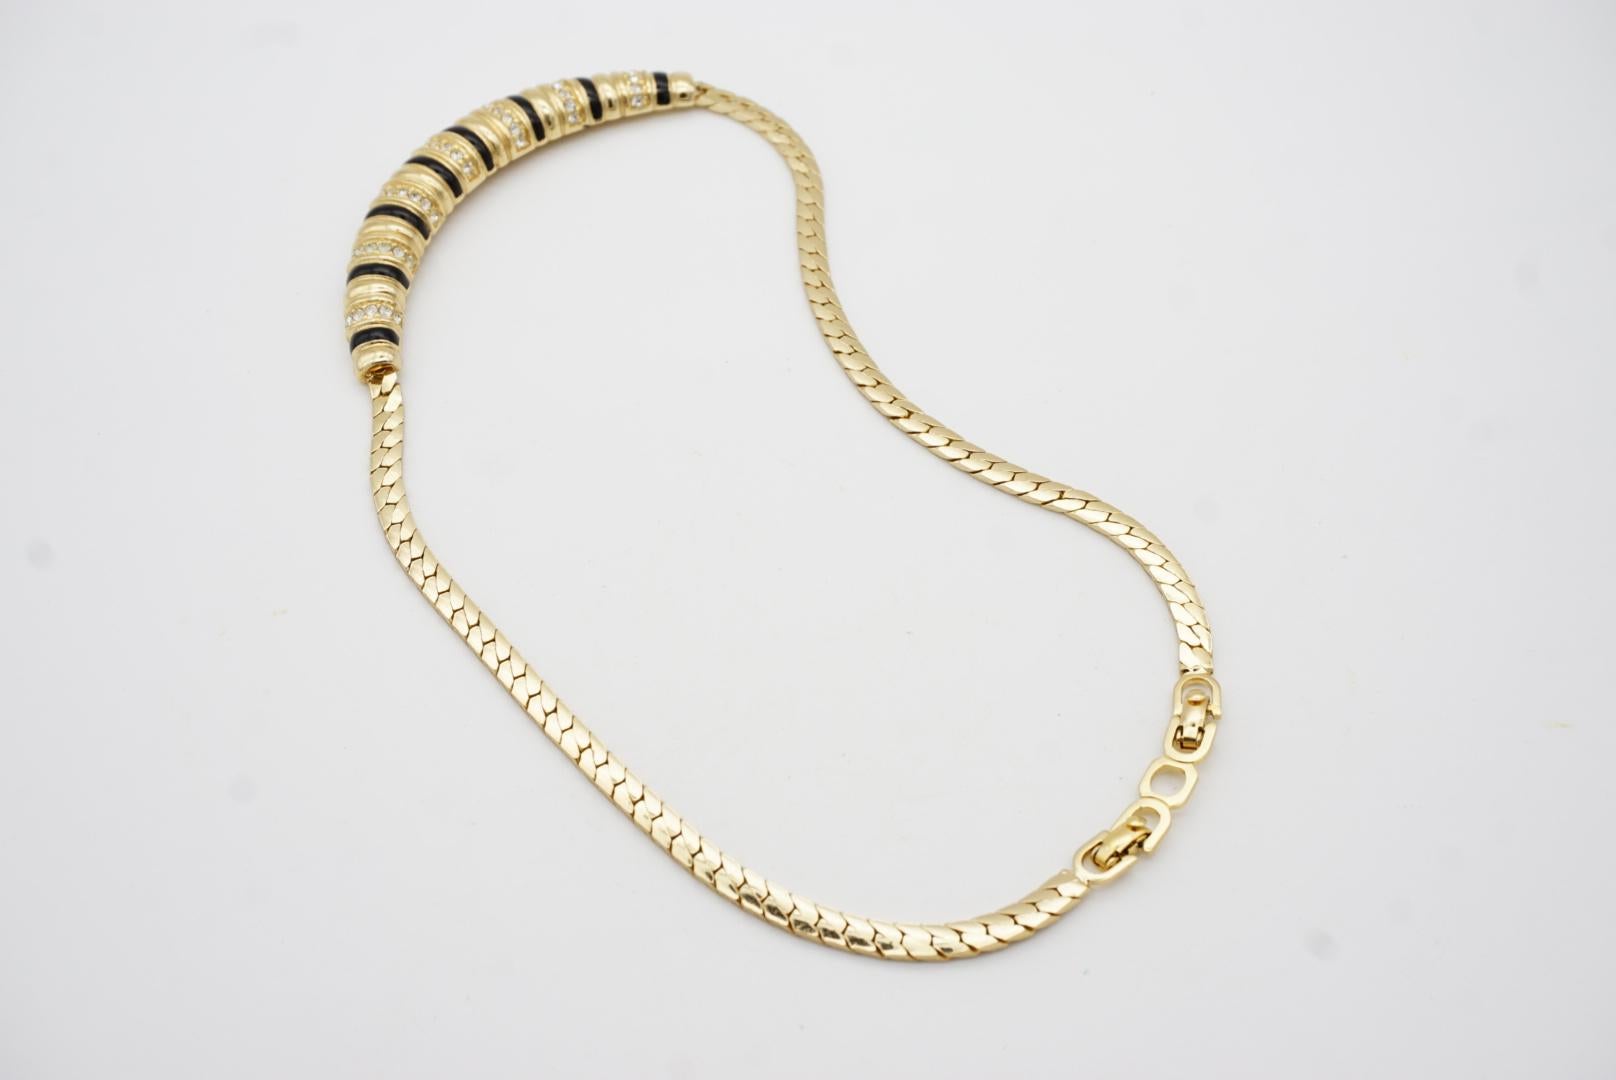 Christian Dior Vintage 1980s Long Bar Black Enamel Crystal Gold Pendant Necklace For Sale 7